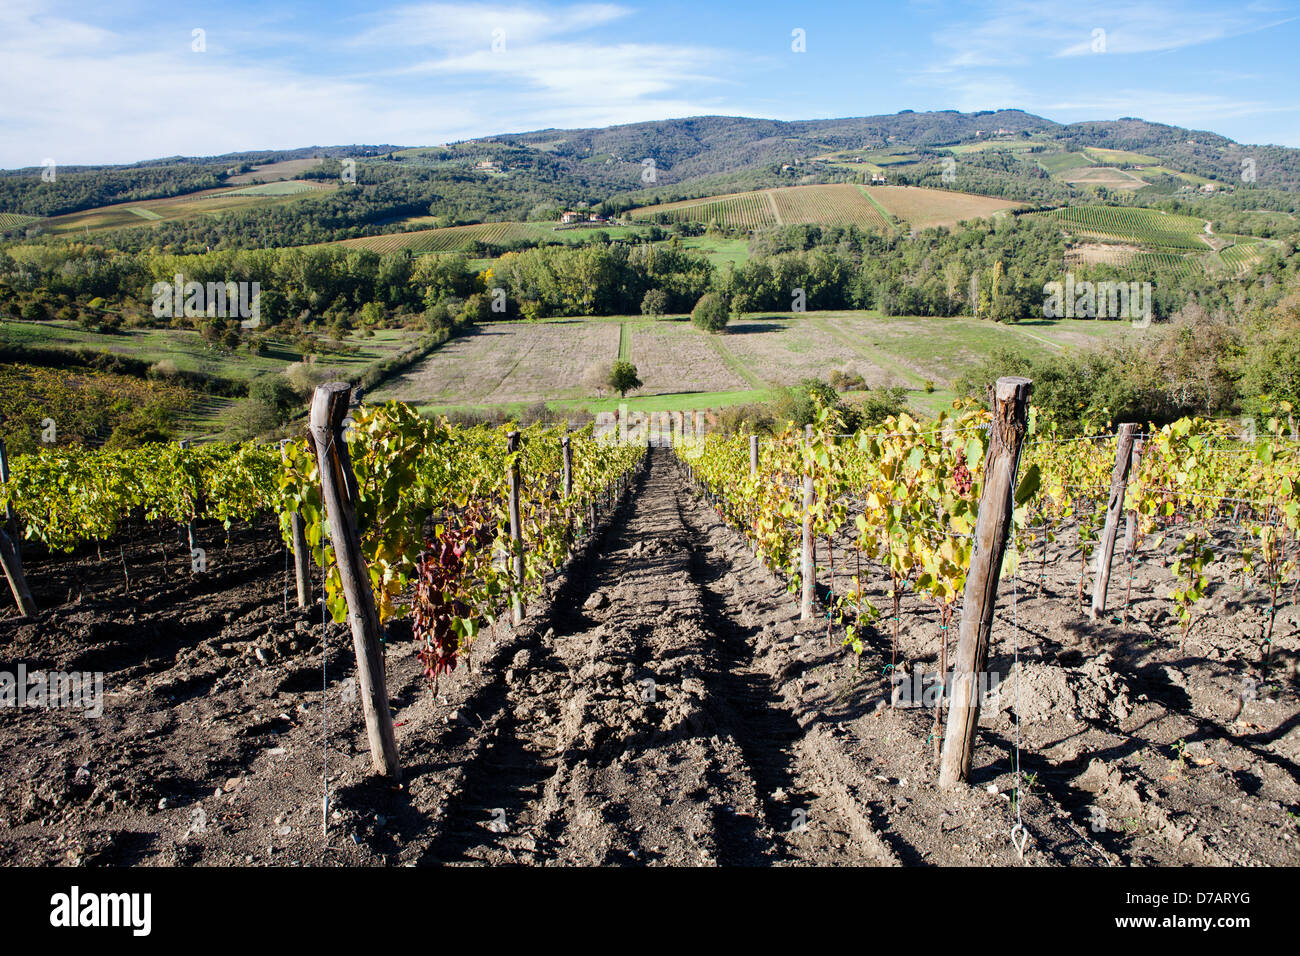 Italy Tuscany Radda in Chianti vineyards Stock Photo